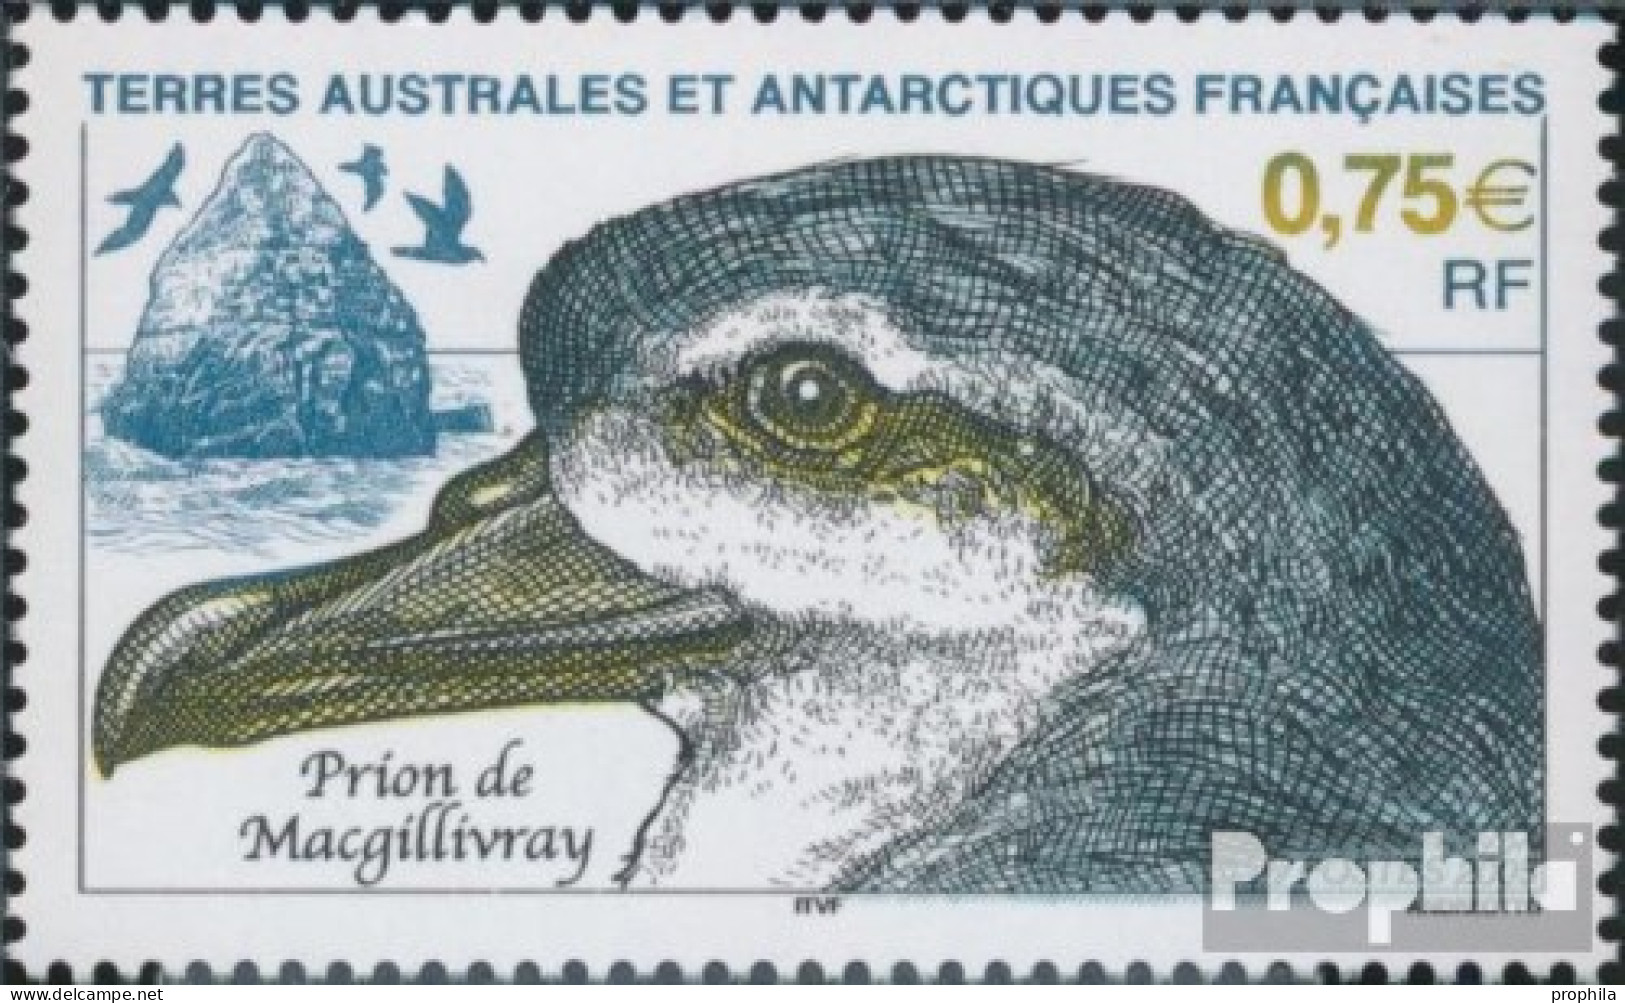 Französ. Gebiete Antarktis 561 (kompl.Ausg.) Postfrisch 2005 Tiere Der Antarktis - Nuovi